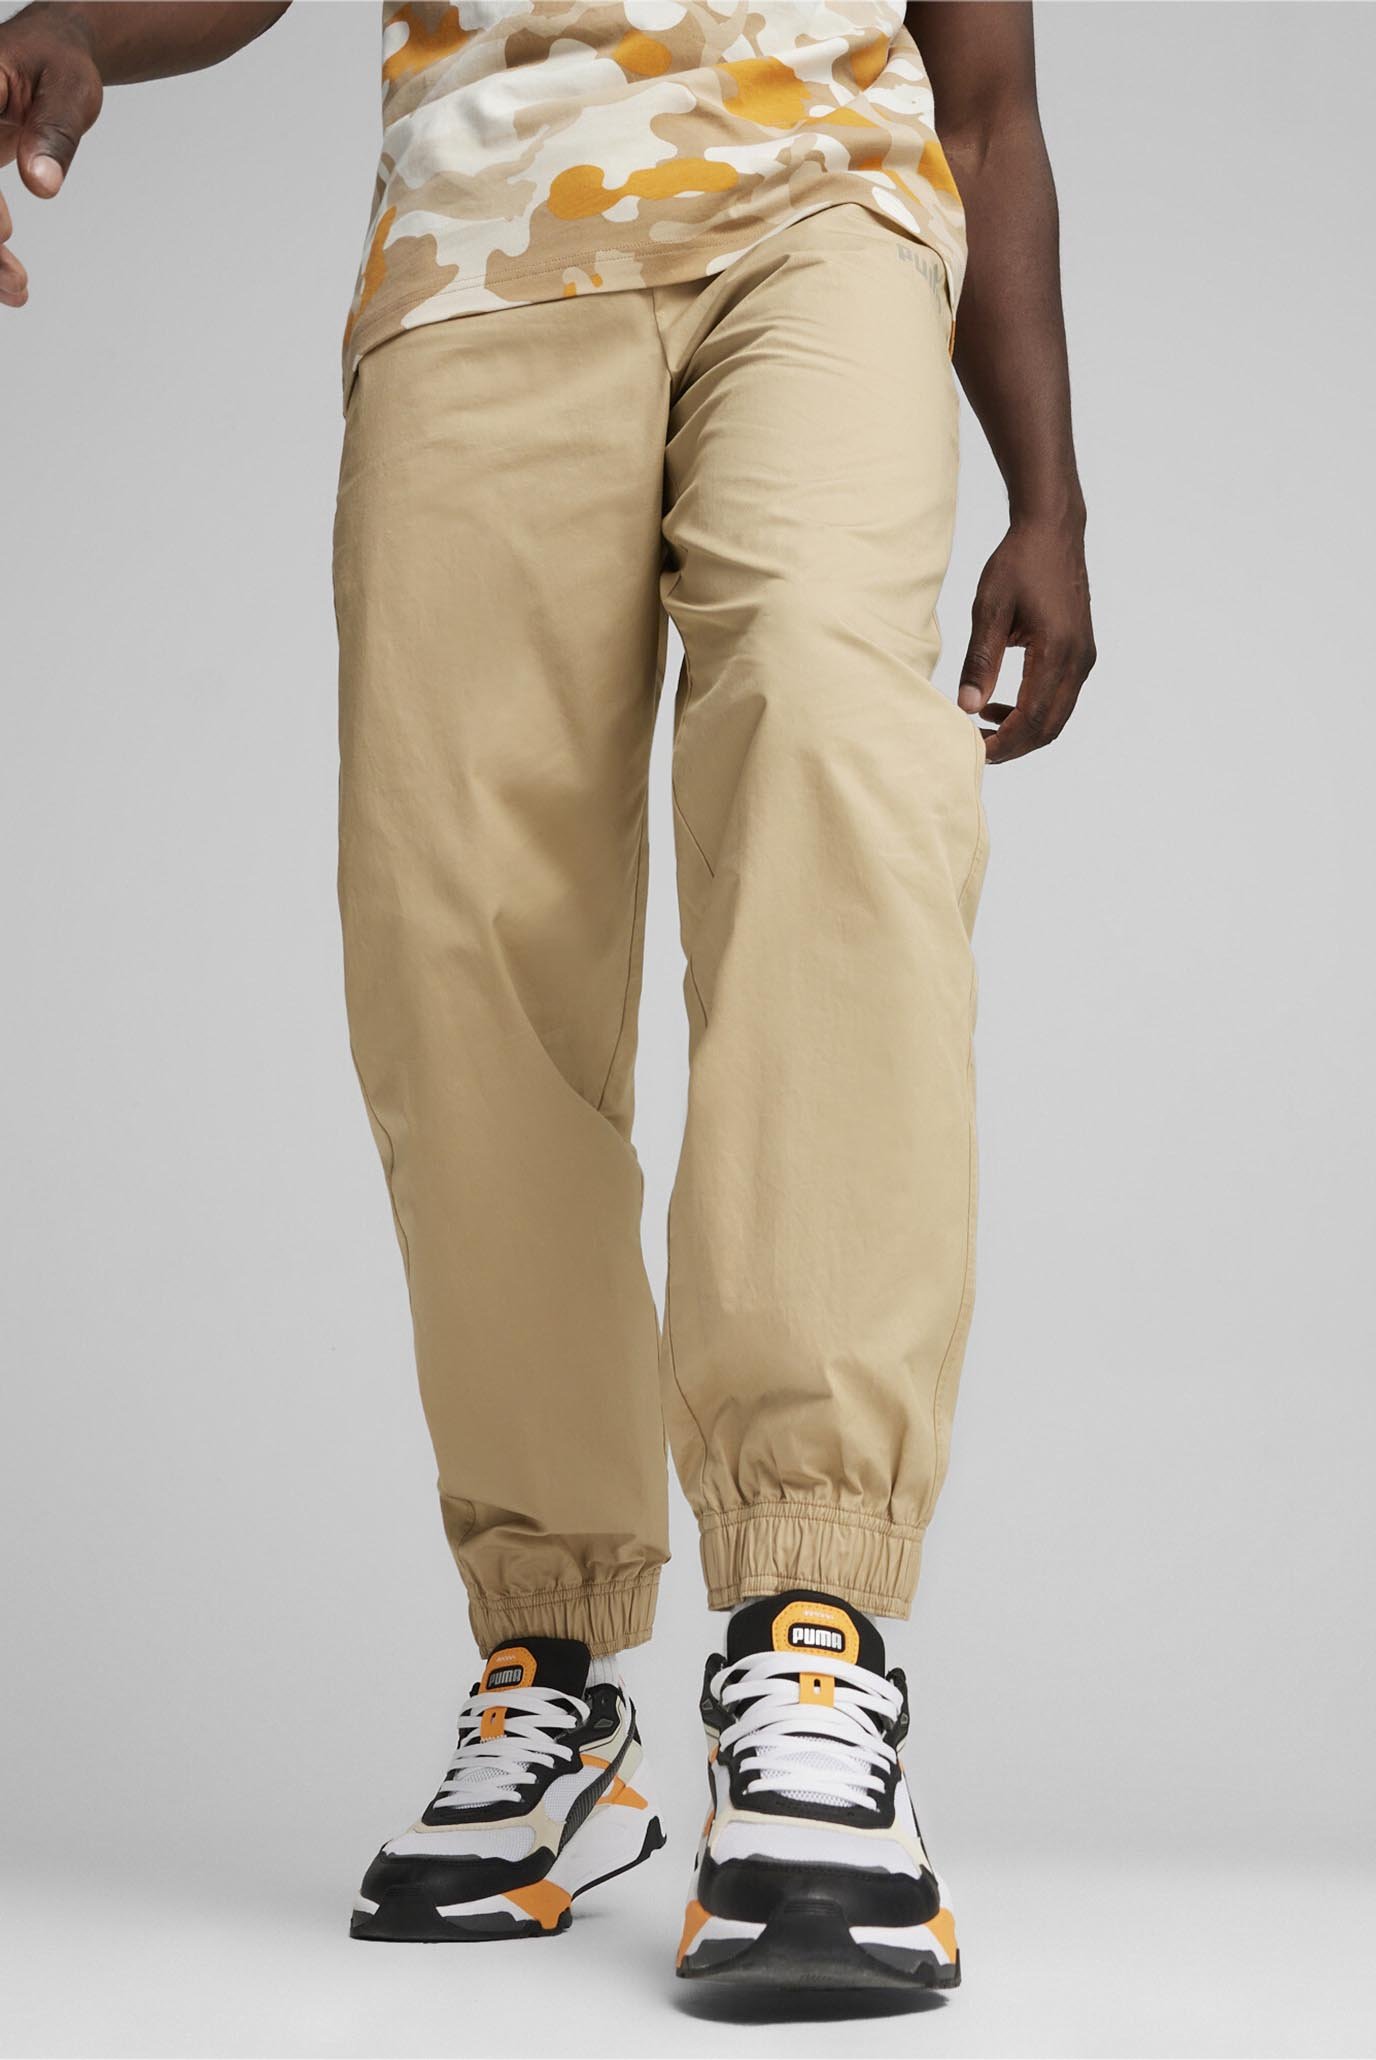 Чоловічі бежеві штани ESS Men's Chino Pants 1